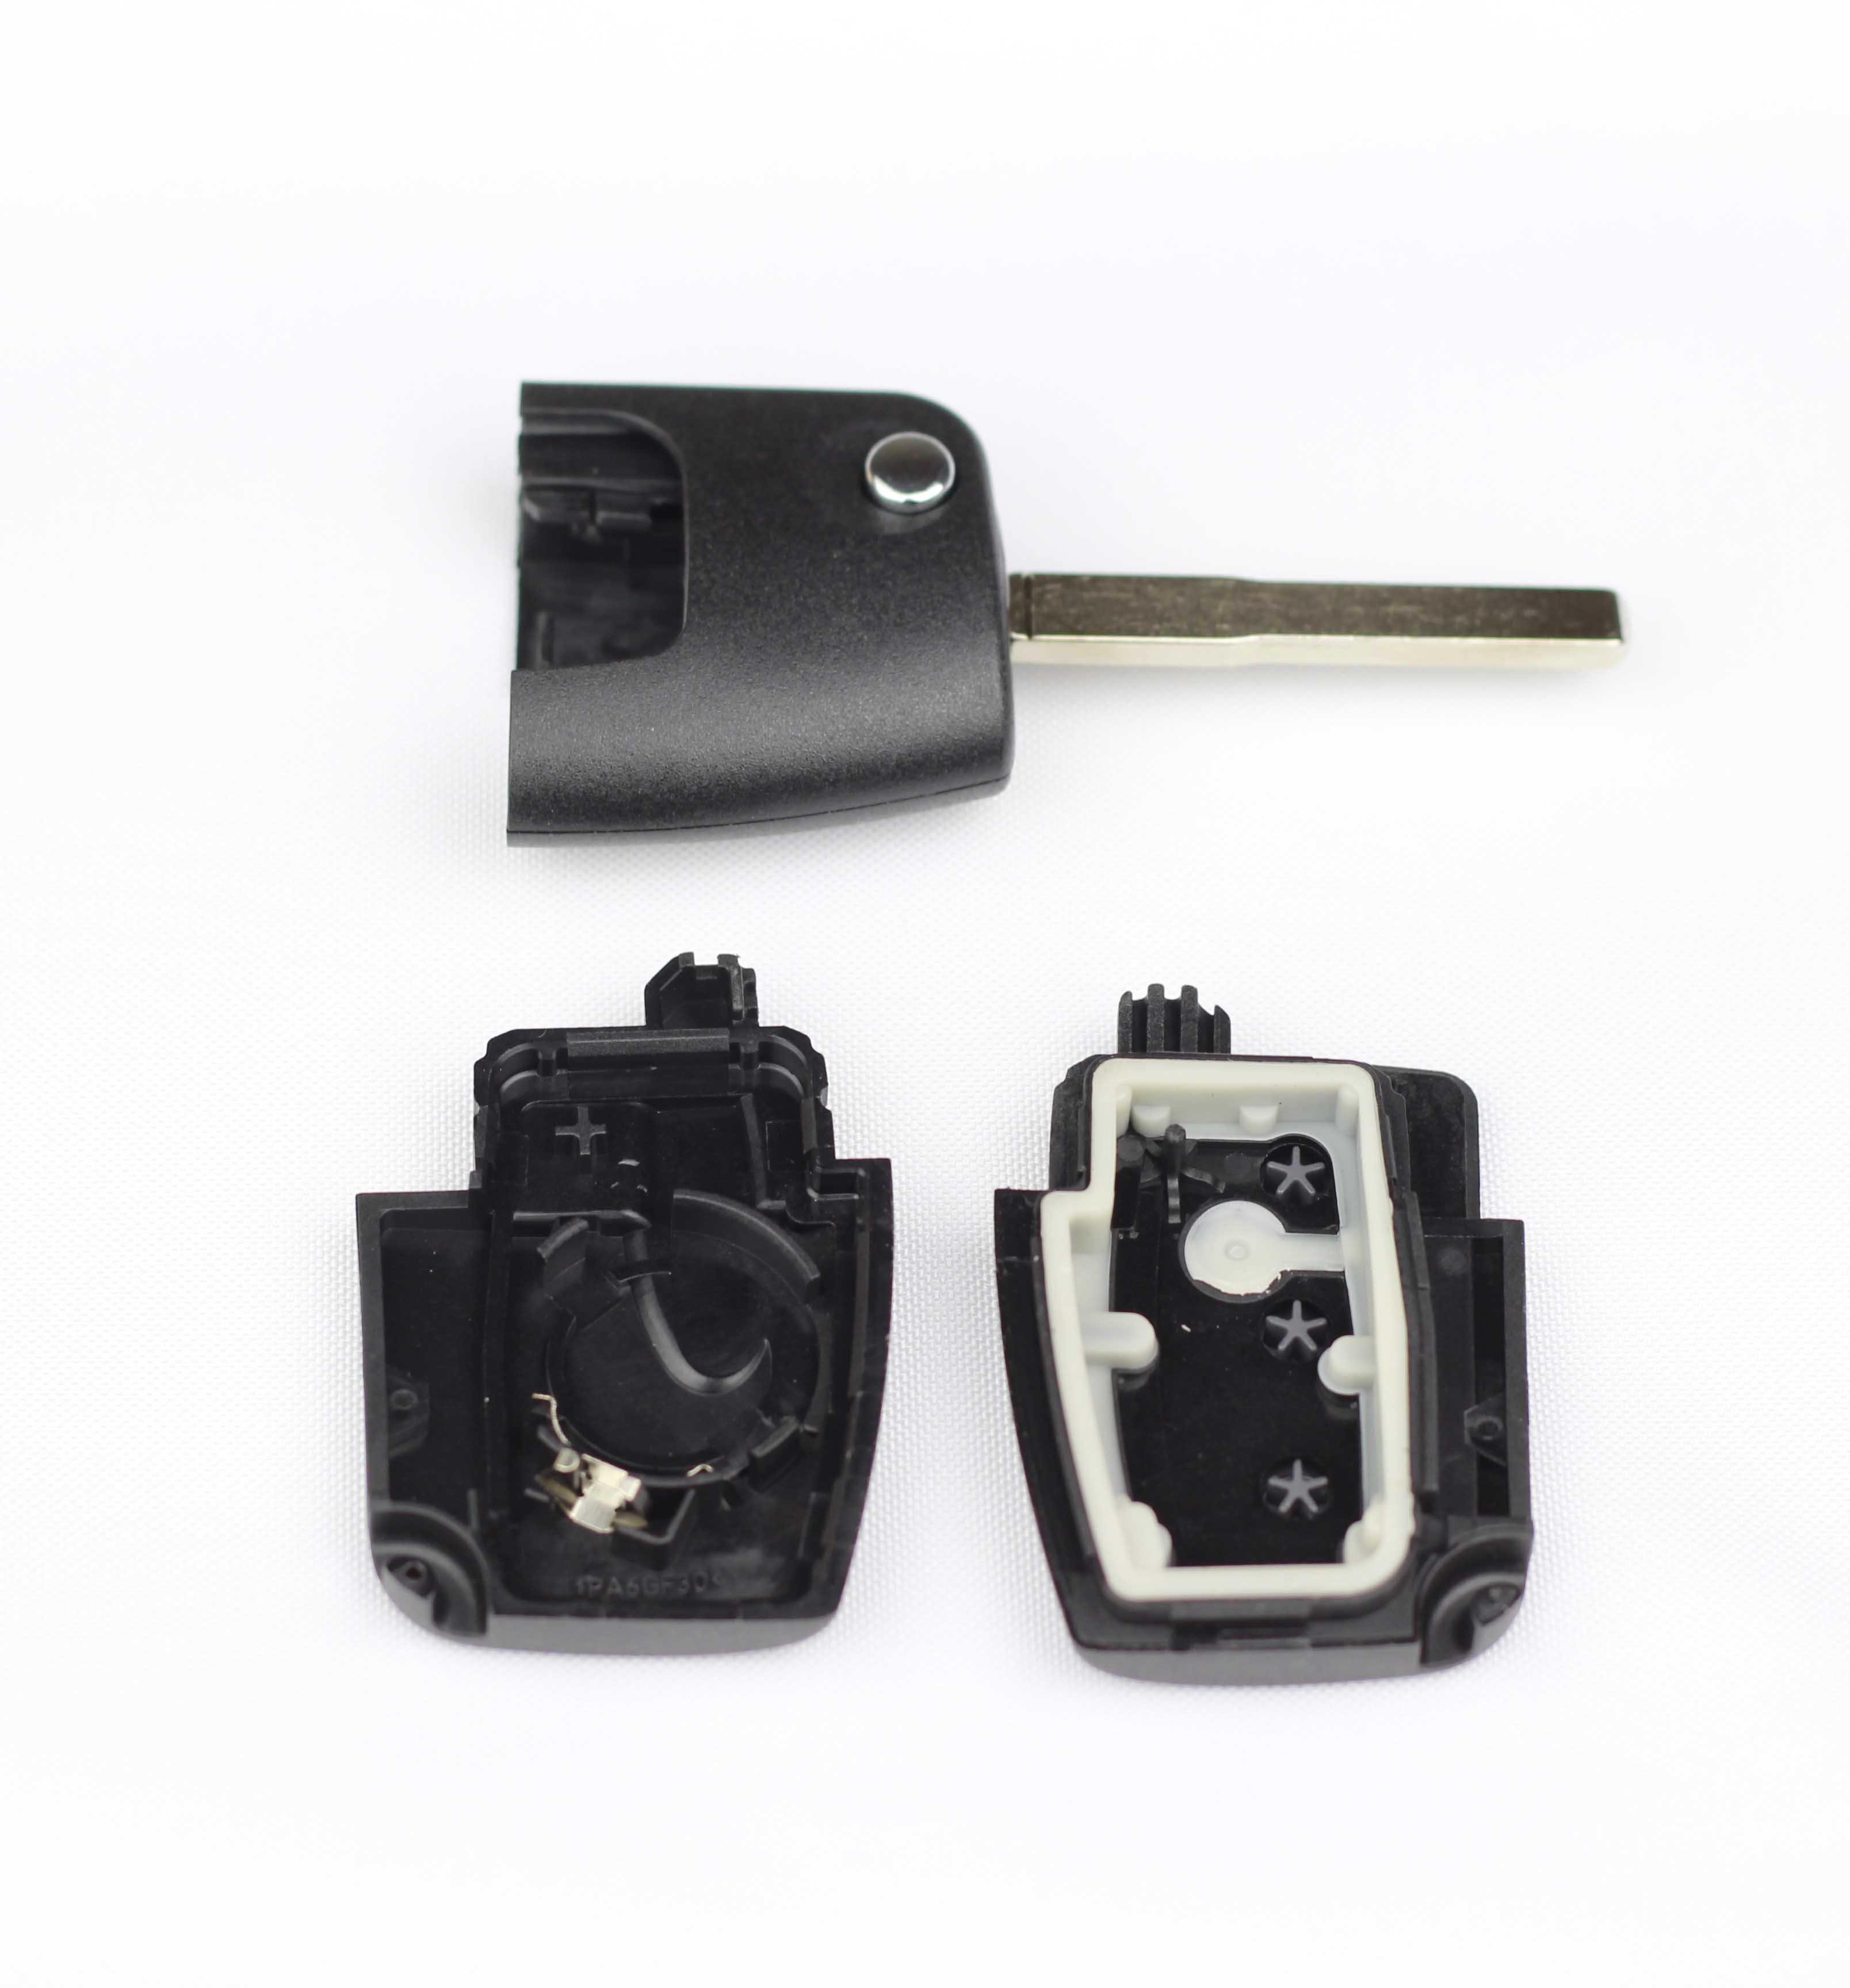 Fekete színű, 3 gombos Ford kulcs, bicskakulcs szétszedve. HU101 kulcsszárral.